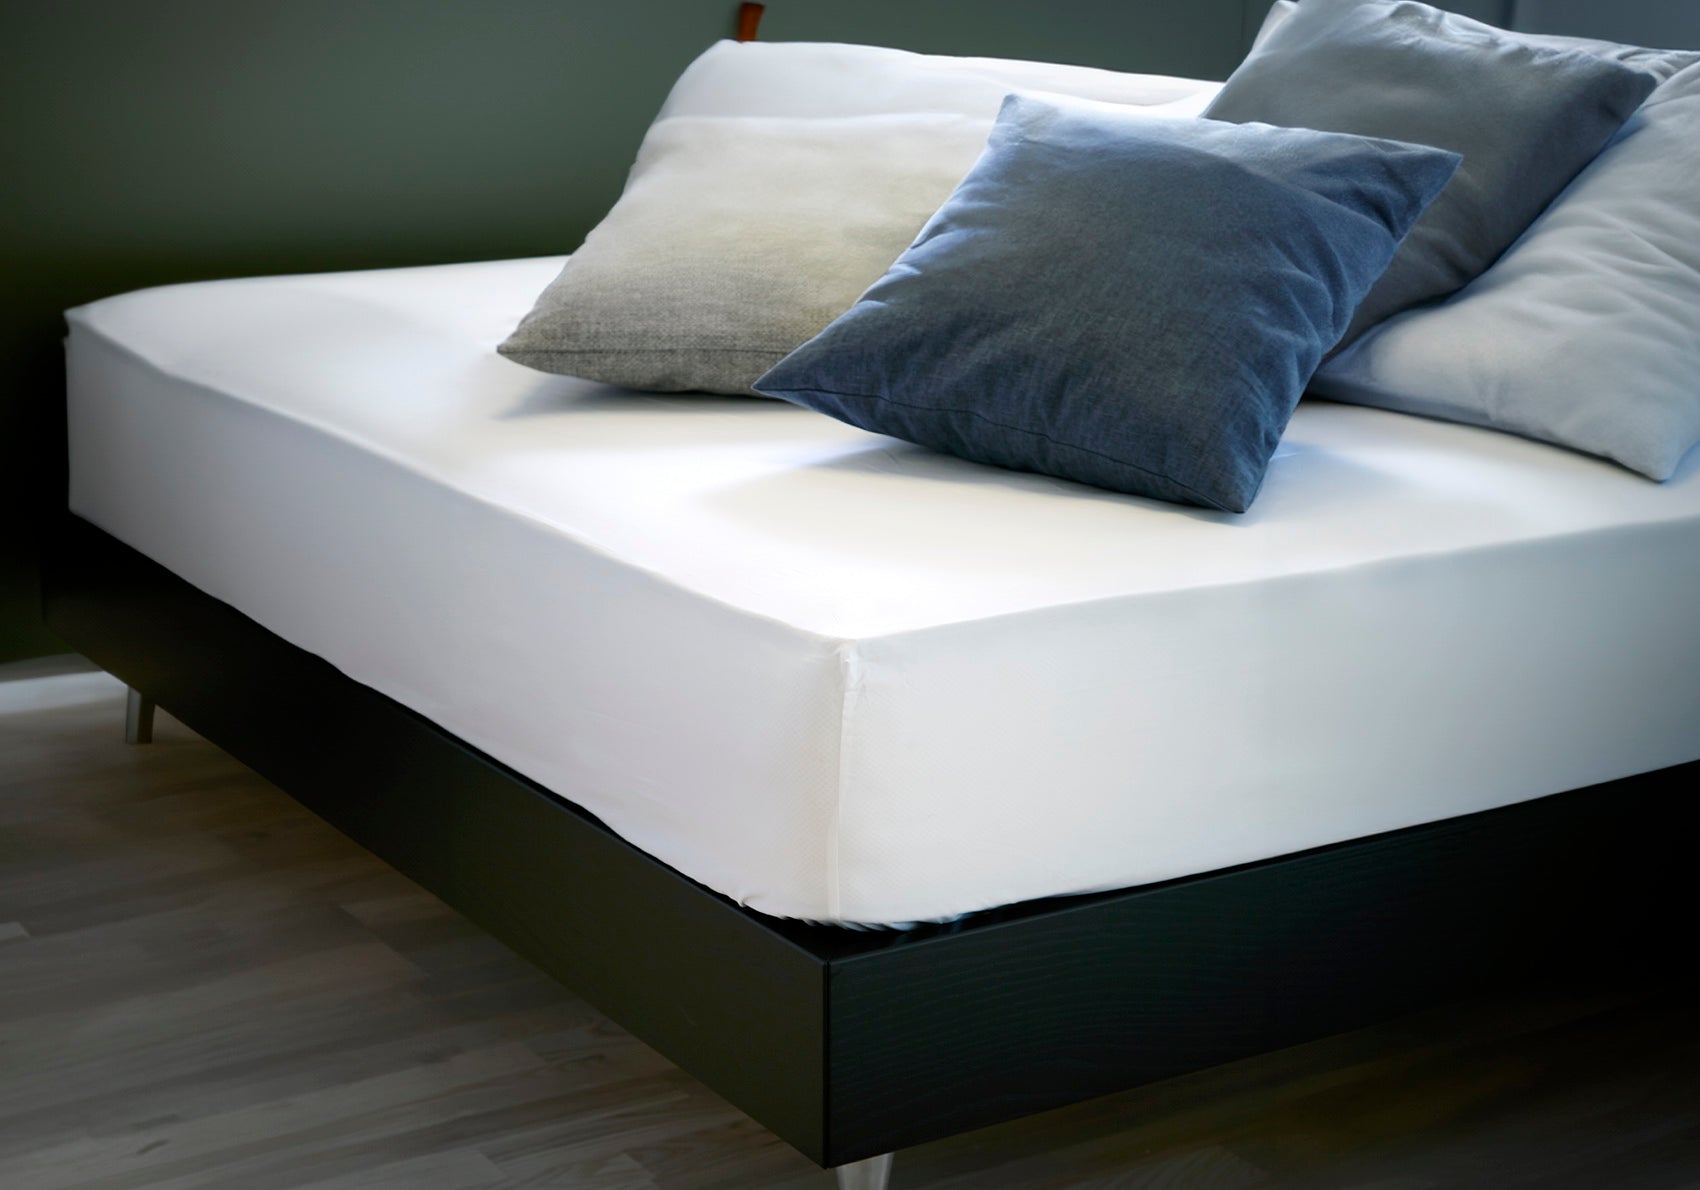 Faconlagen i hvid - på seng i soveværelse miljø